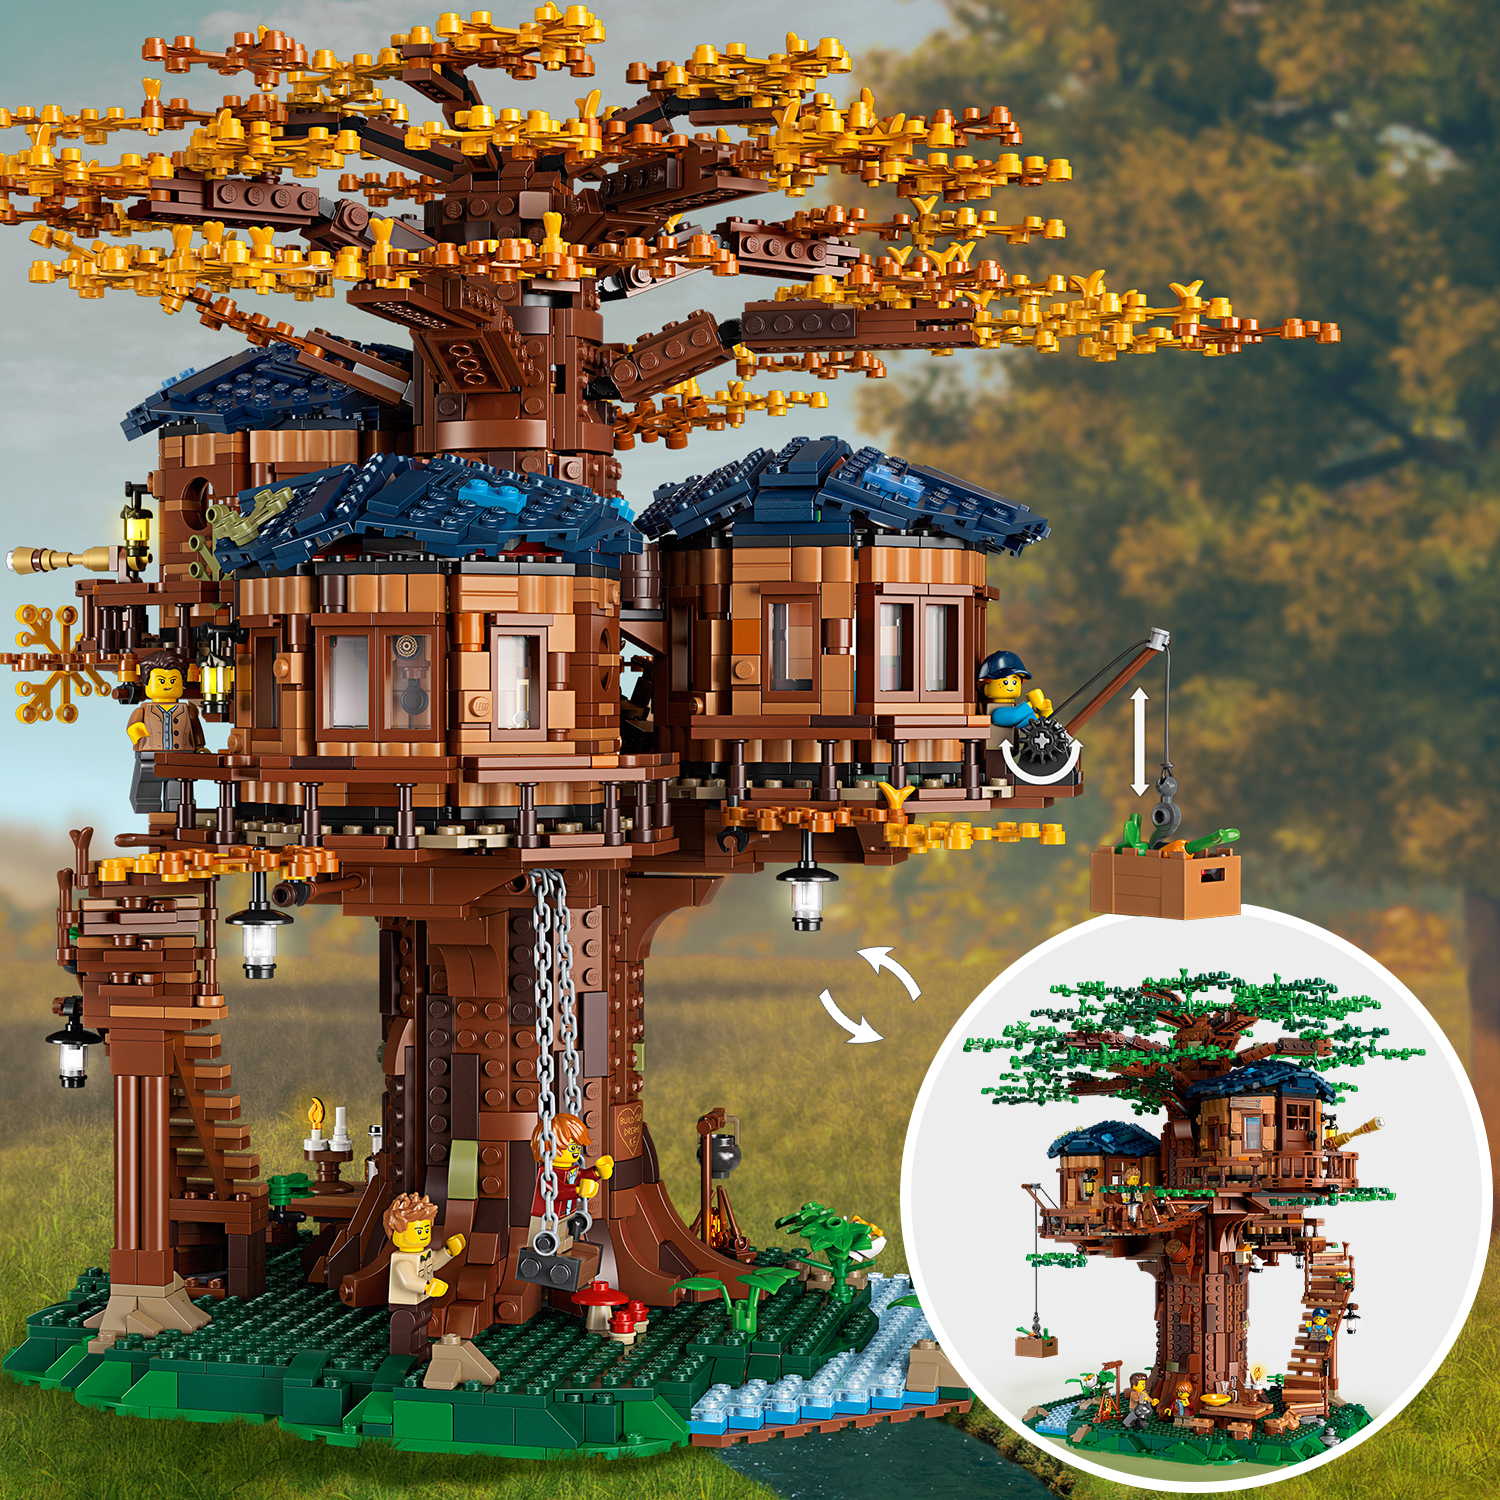 Lego ideas 21318 casa sull'albero, modellino da costruire con elementi in plastica pe, con 3 casette e minifigure, idee regalo - LEGO IDEAS, Lego